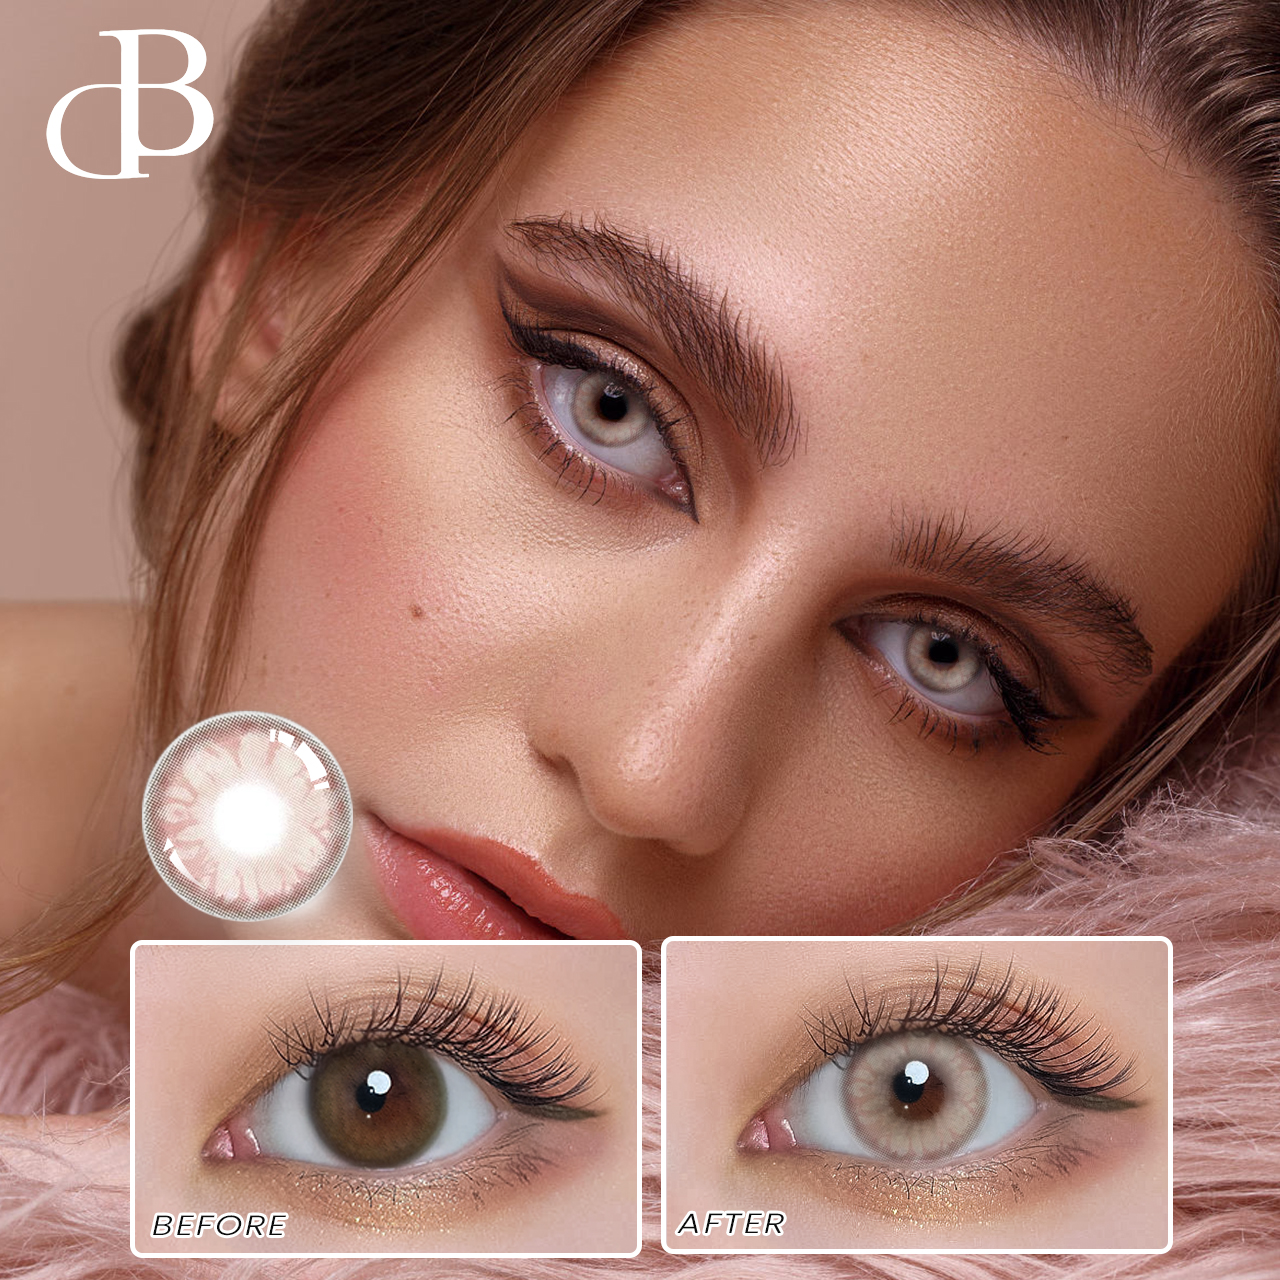 DB Roční barevné kontaktní čočky pro smyslnou krásu Branclear barevné kontaktní čočky